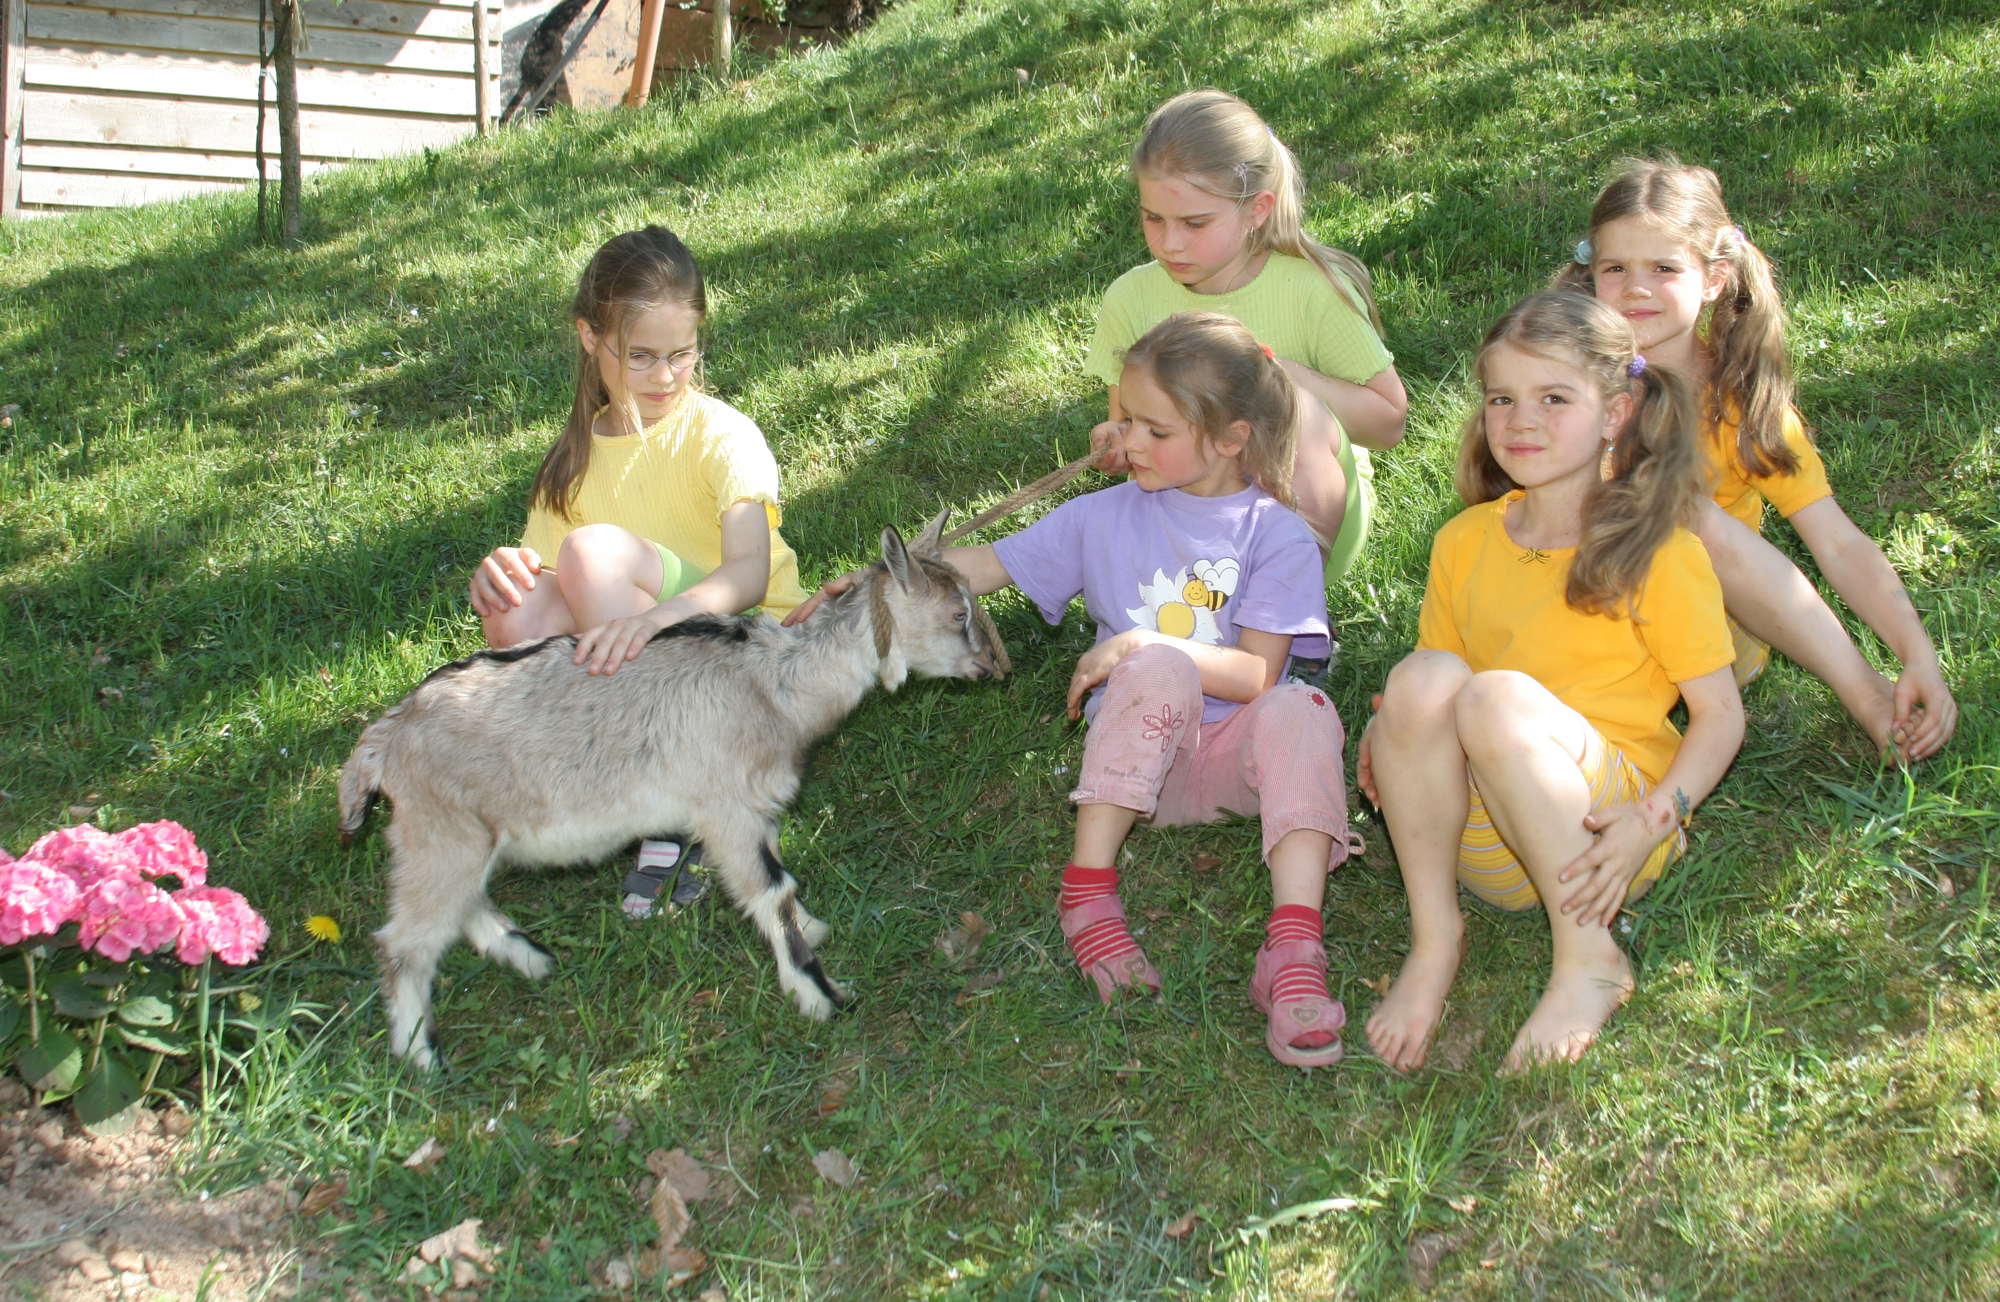 Mit Kindern den Bauernhof entdecken

Ferien auf dem Bauernhof -  auf dem Hinterbauer Hof erleben Sie das Leben auf einem Bauernhof ganz authentisch. Sie können mit Ihren Kindern Schafe füttern, Ziegen melken oder mit dem Trecker auf das Feld fahren. Wenn Sie mit Ihren Kindern verreisen und Ihnen zeigen möchten, wie das Leben auf dem Land abläuft, dann ist ein Urlaub auf dem Bauernhof genau das Richtige!